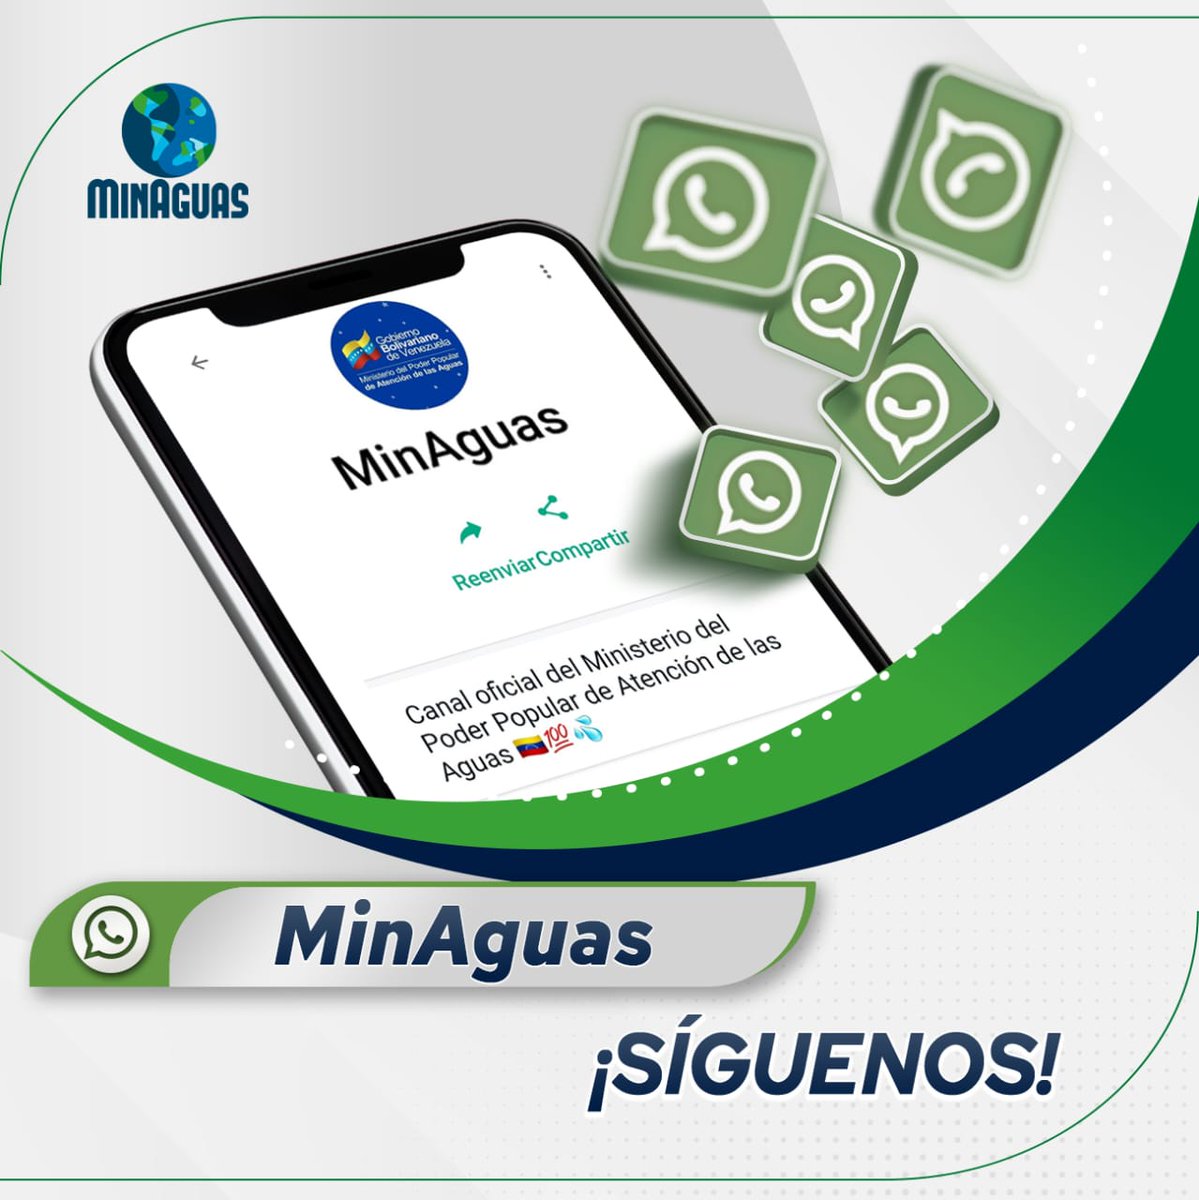 ✔️Sigue nuestro canal de #MinAguas en WhatsApp siguiendo el enlace:    

bitly.ws/38zxw 

#CadaGotaCuenta💧💧